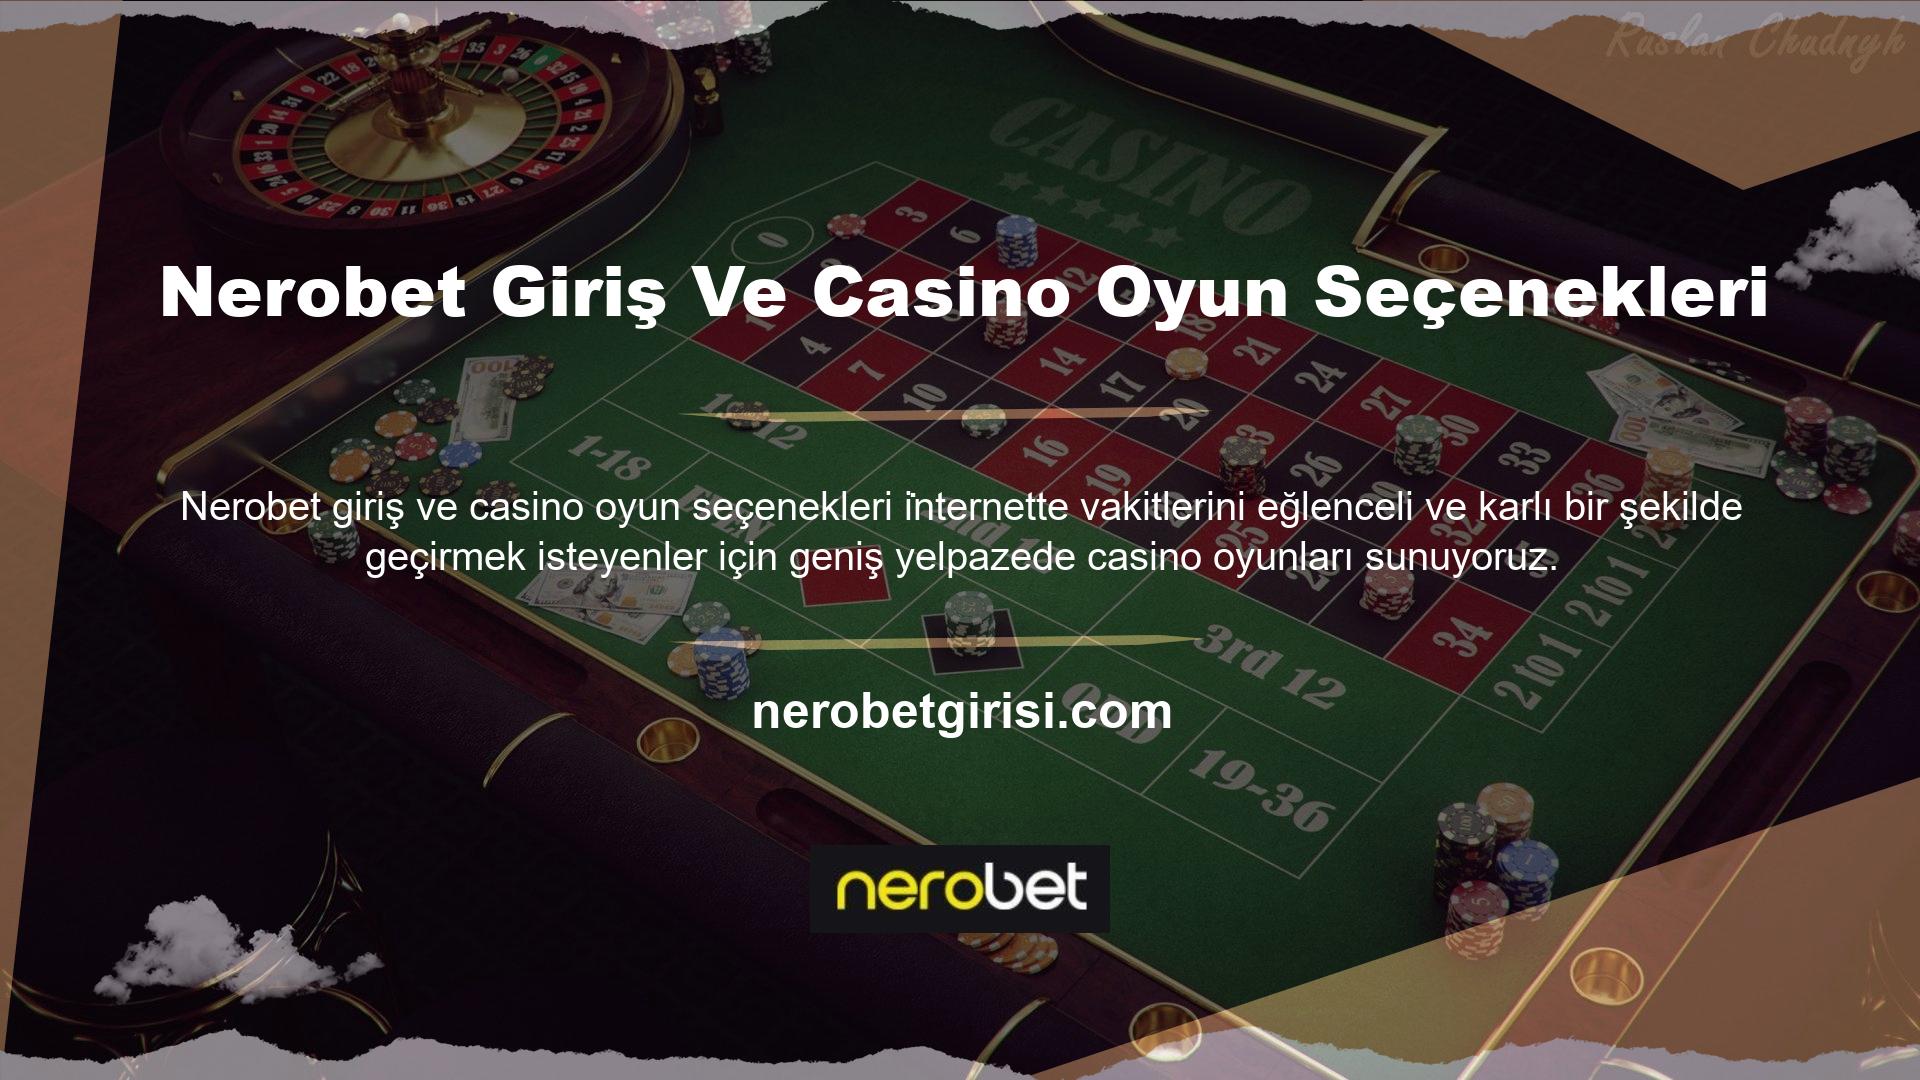 Online bahis siteleri Nerobet Giriş ve Casino Oyun Seçenekleri tarafından tanımlanan casino oyun alternatifleri, oldukça spesifik kriterlere sahip alternatifler sunmaktadır